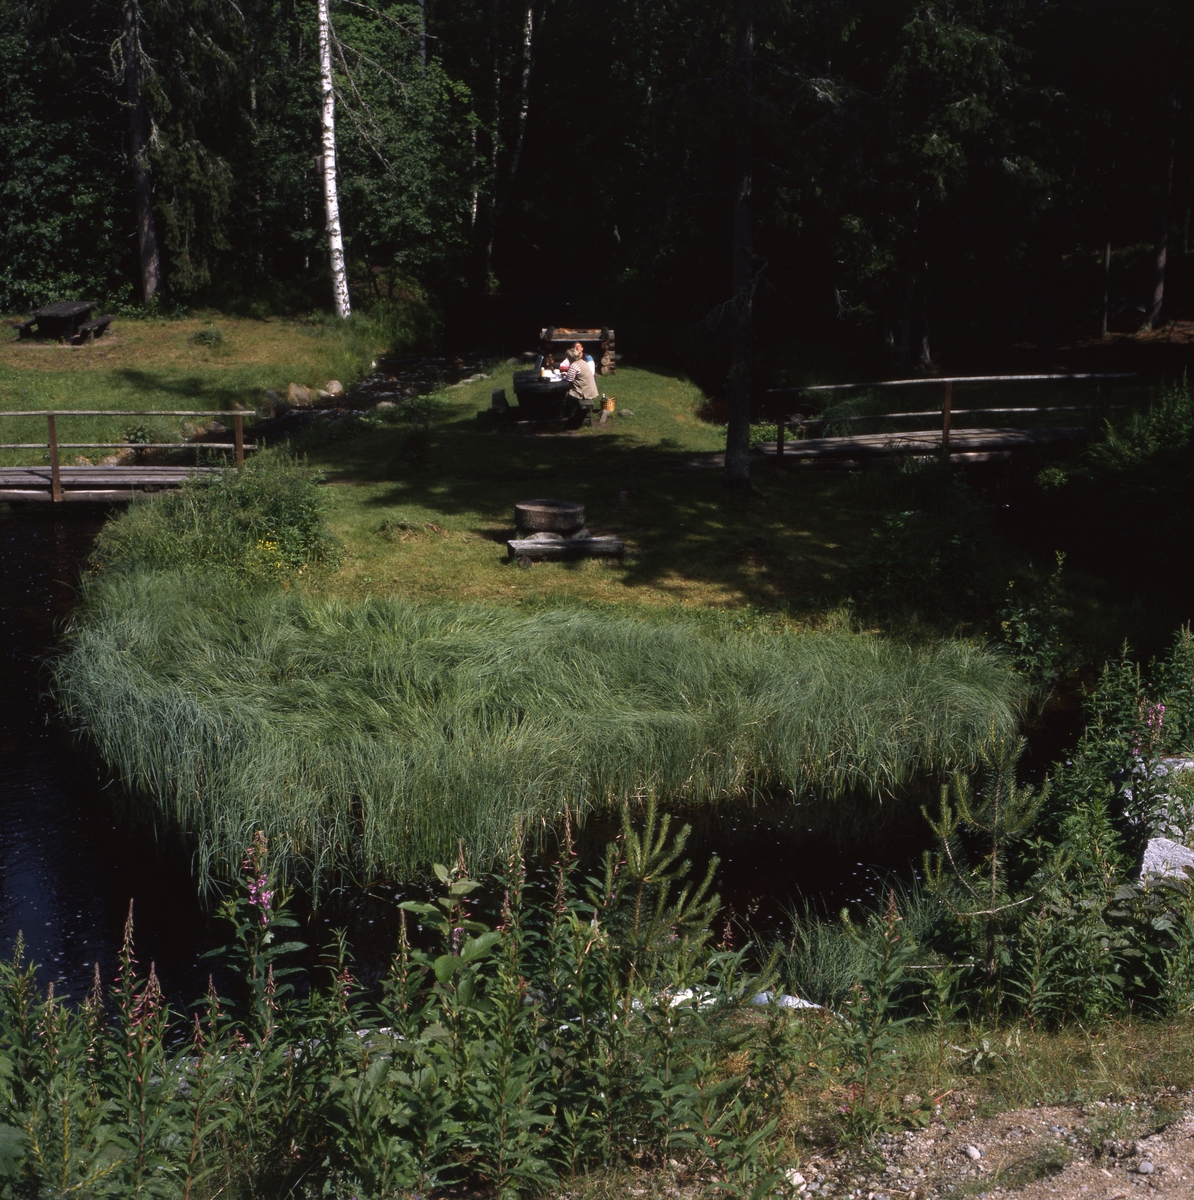 Trolldalen i Växbo, 12 juli 1996. Några människor ha picknick på en liten ö vid ett skogsbryn. Två smala spänger leder ut till ön.